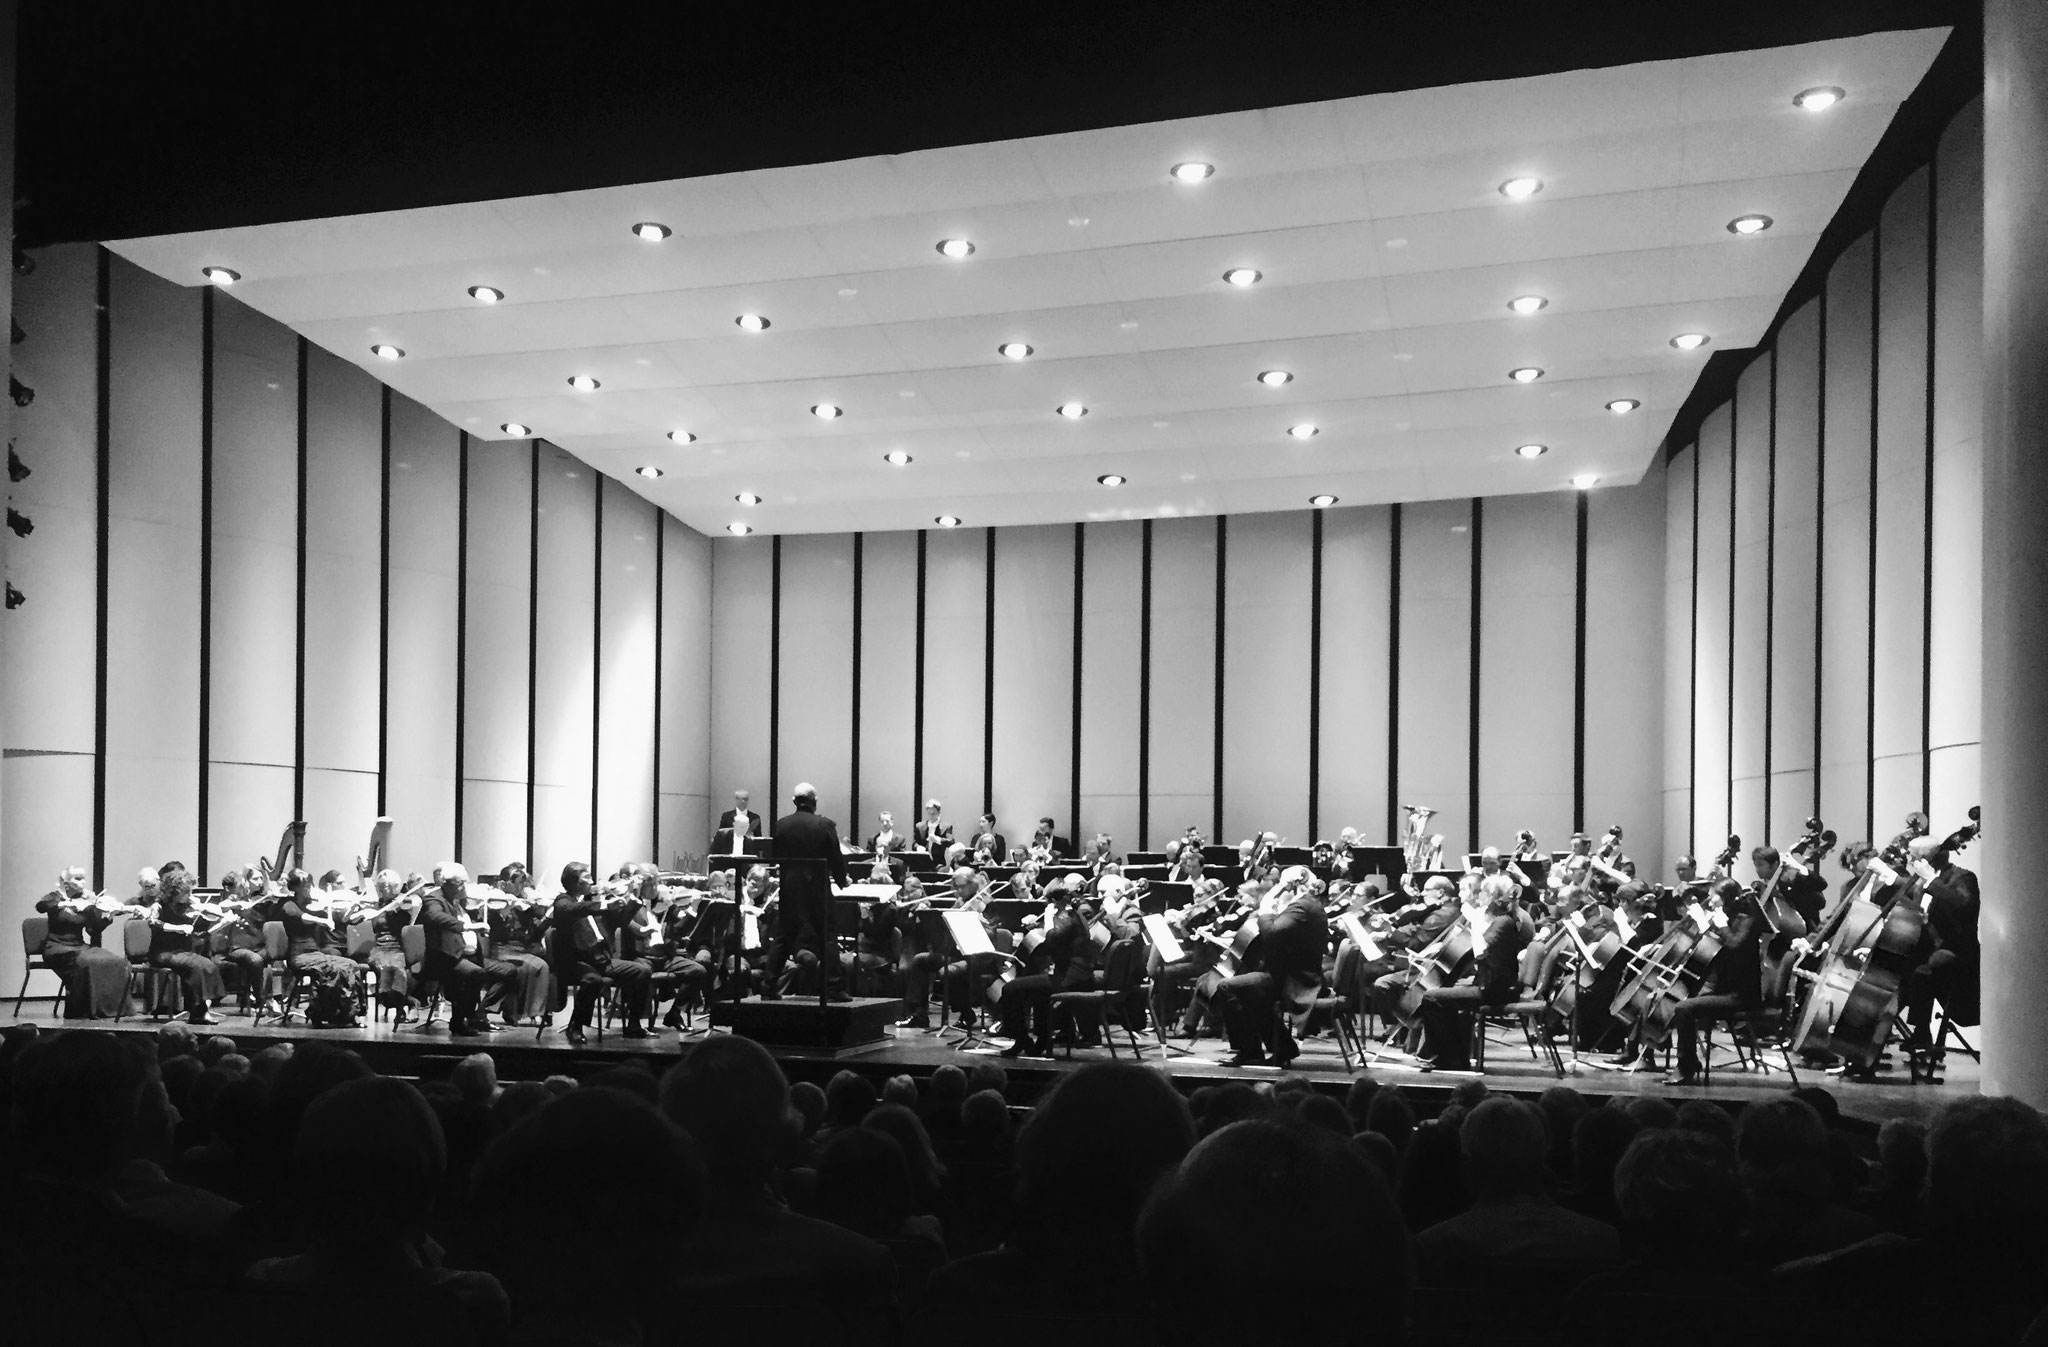 Lui Chan als Konzertmeister des Brucknerorchester Linz bei der USA-Tournee 2017